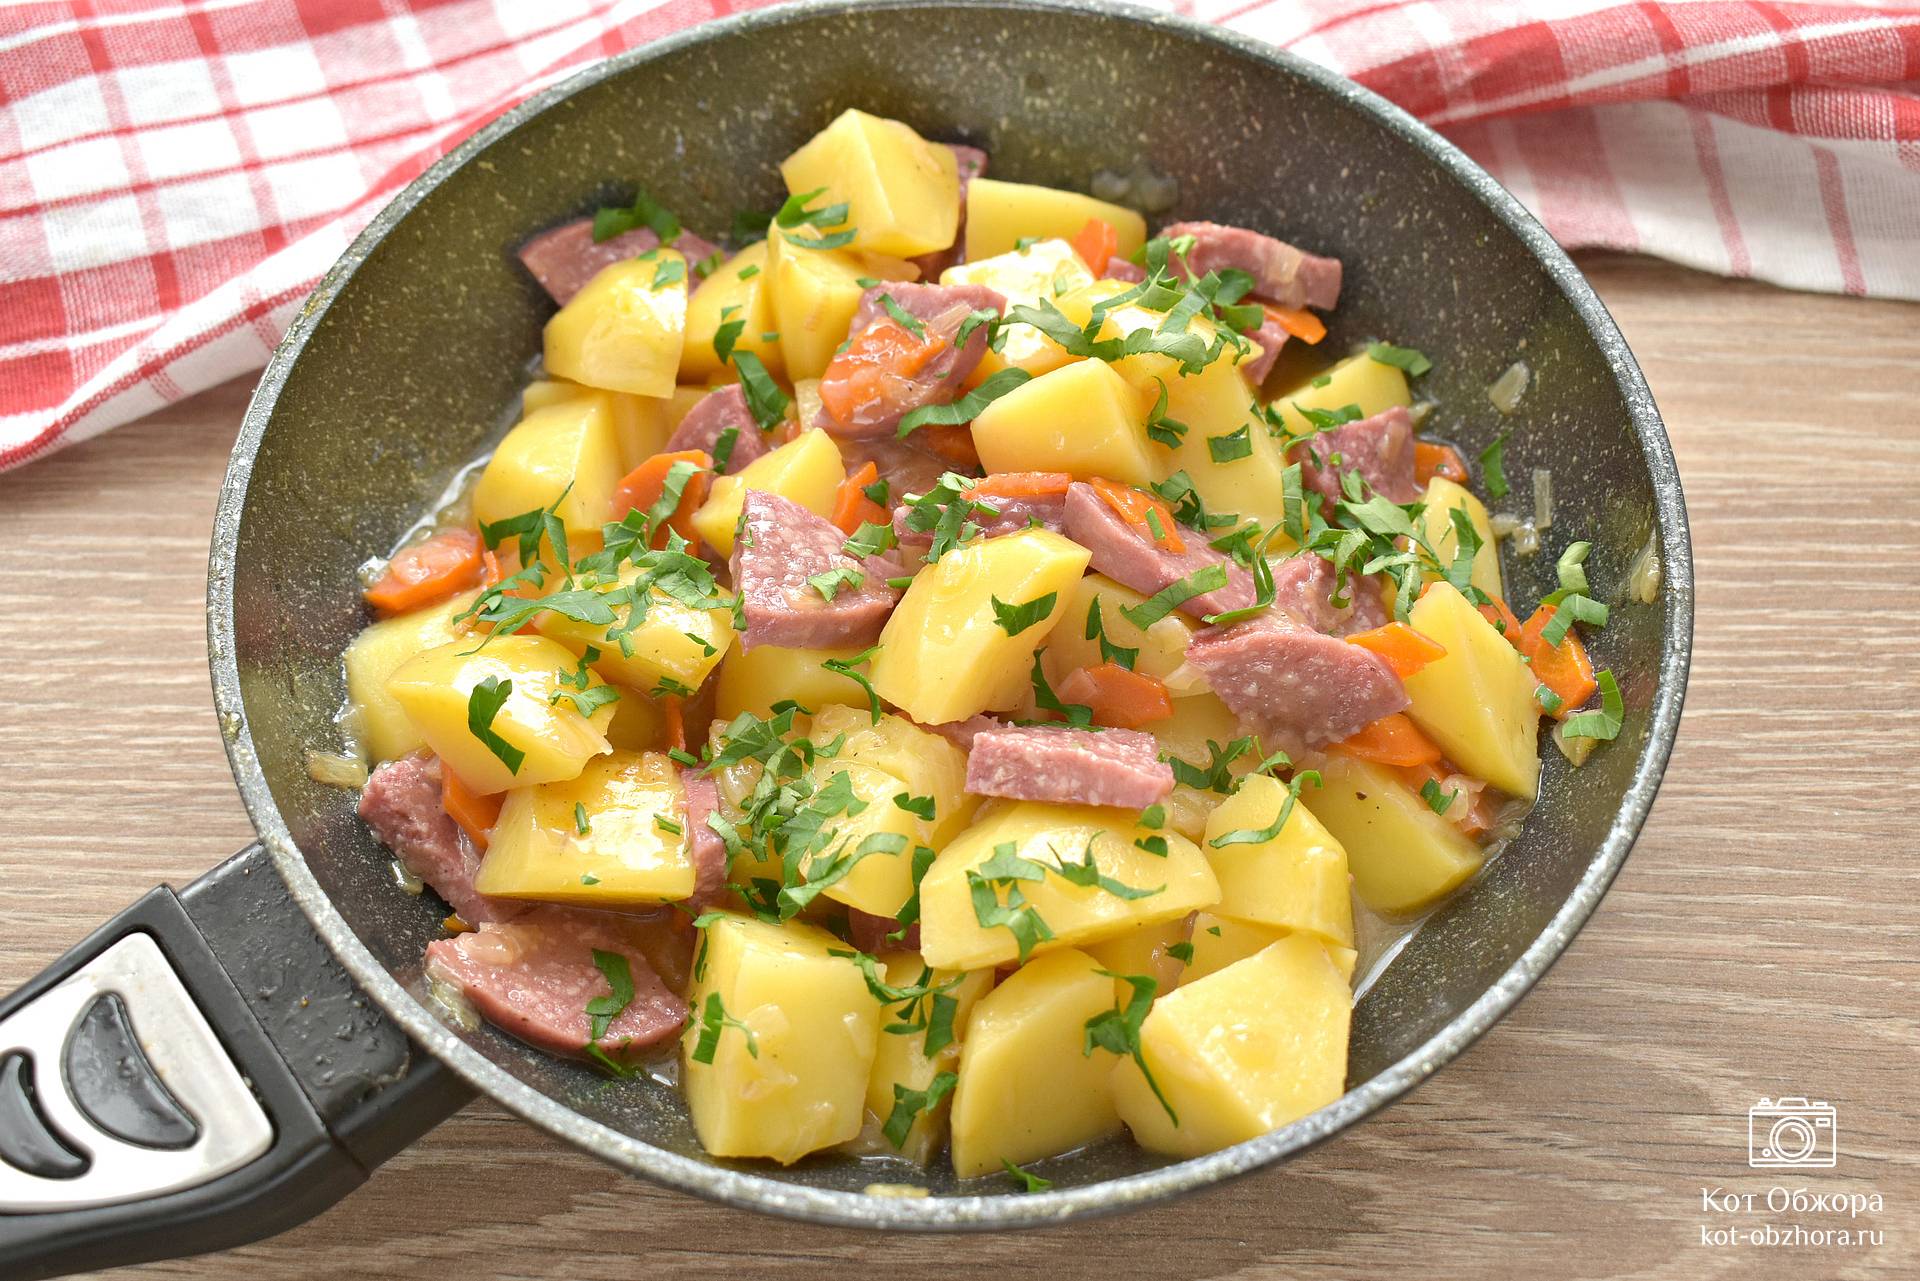 Сочная тушеная картошка с мясом в бульоне